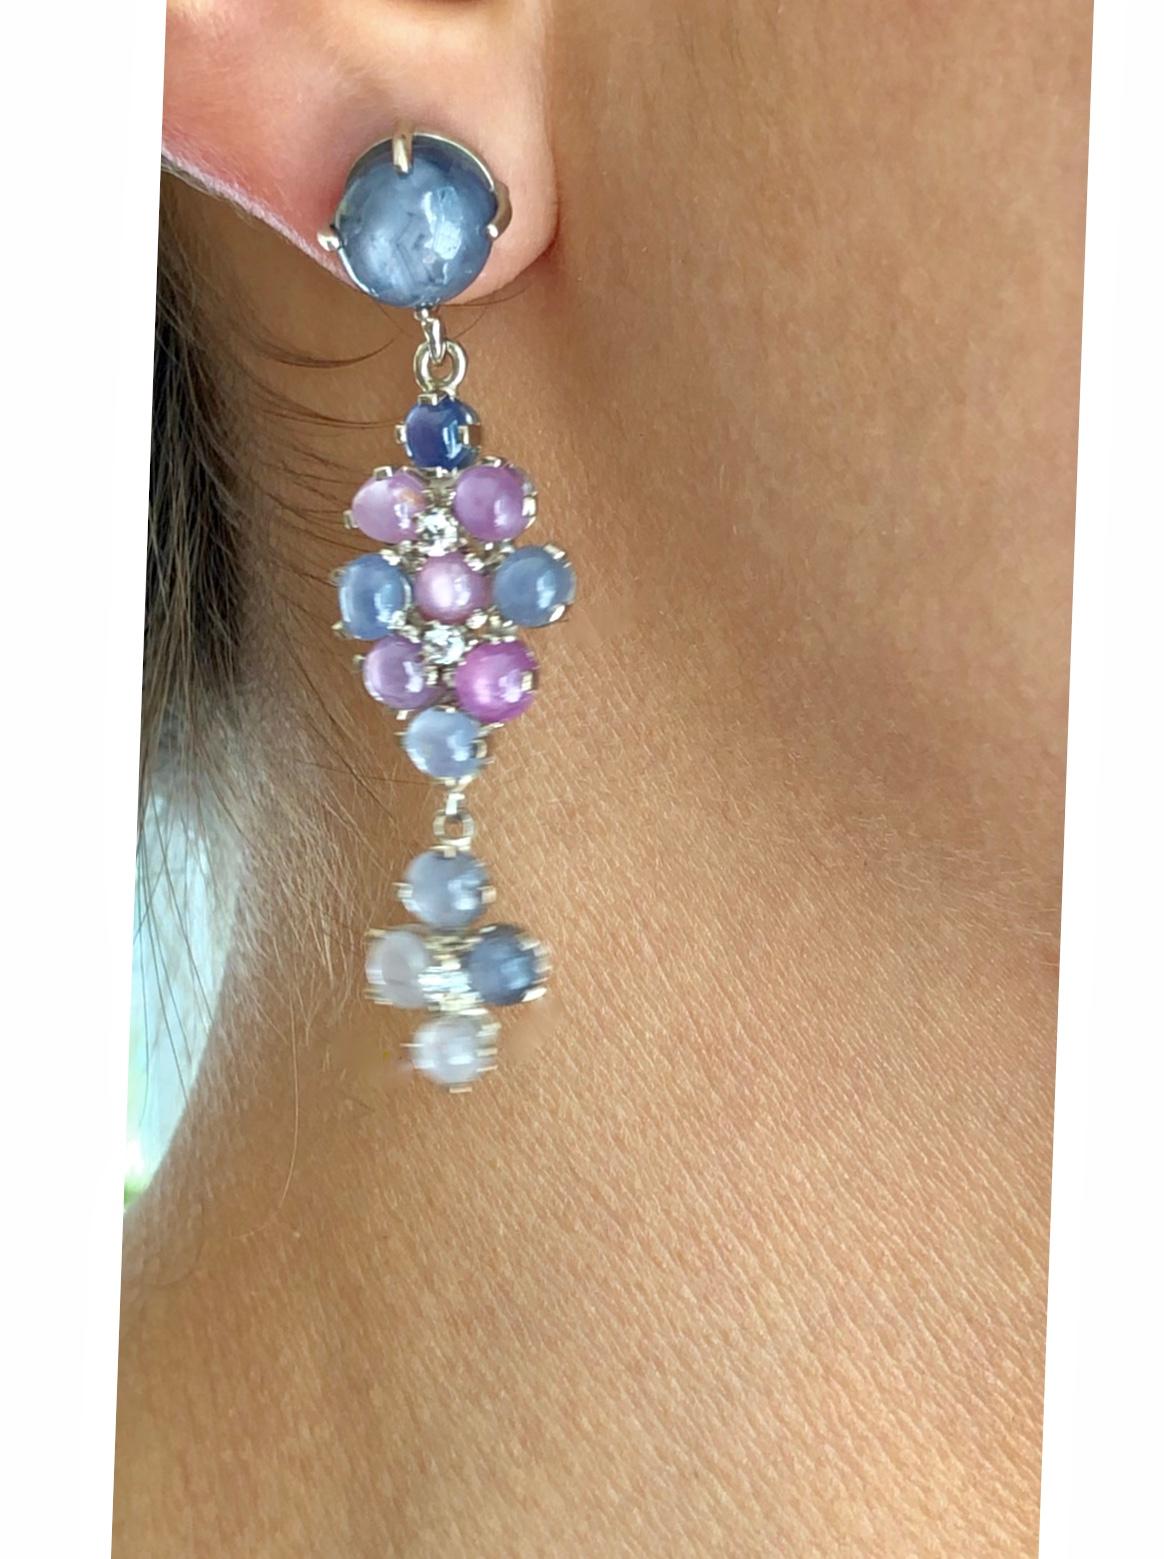 No-Heat Burma Star Sapphire Chandeliers Earrings Art Deco Style 1